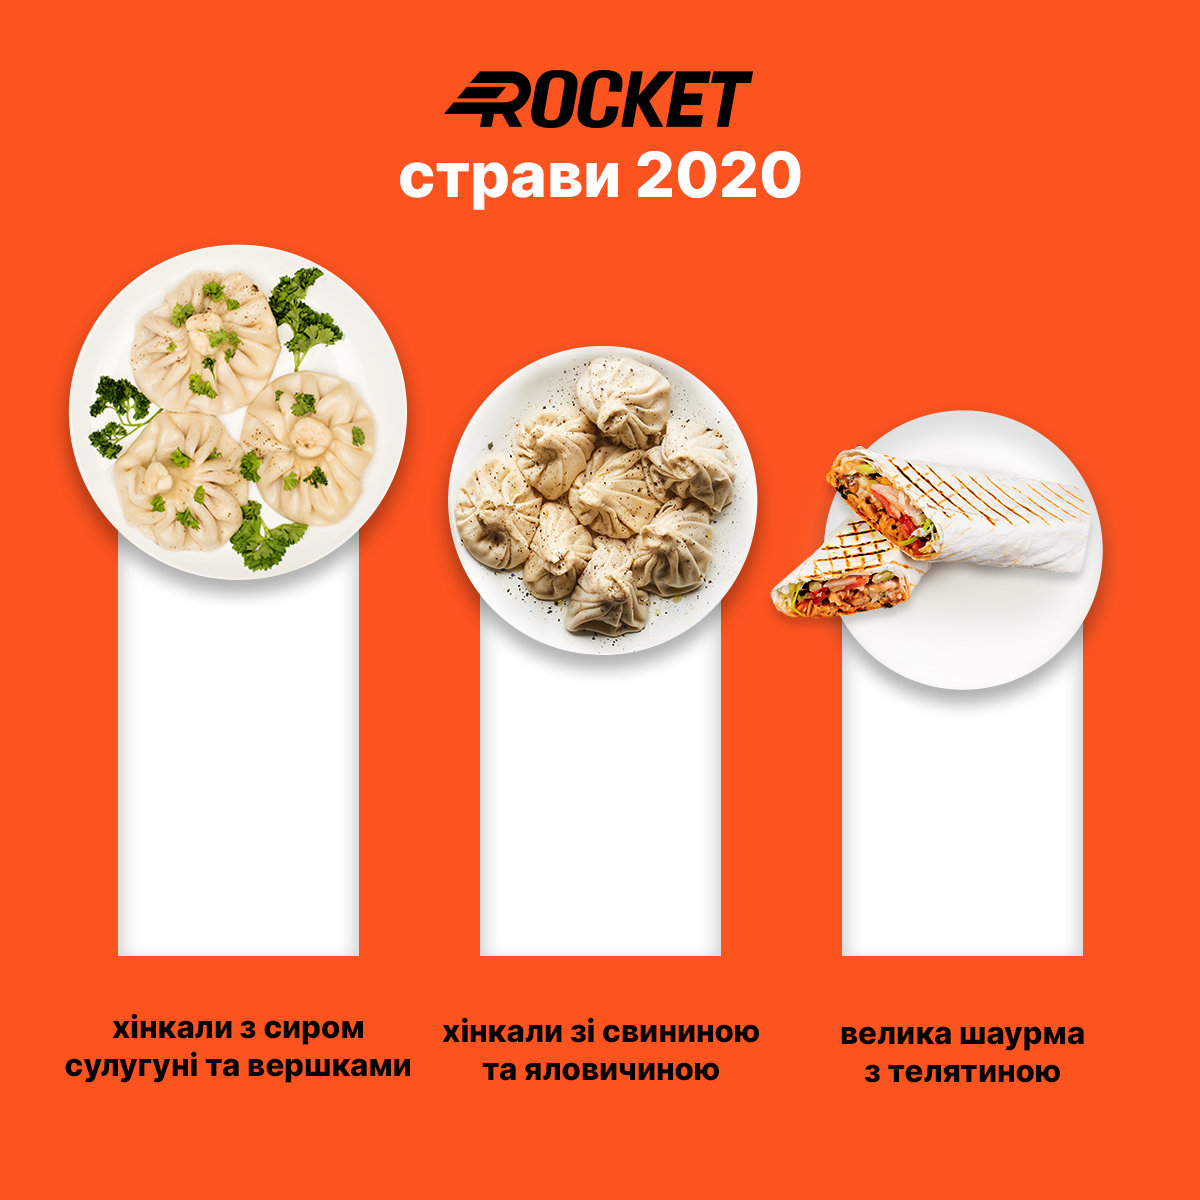 Рейтинг Rocket: найпопулярніша страва 2020